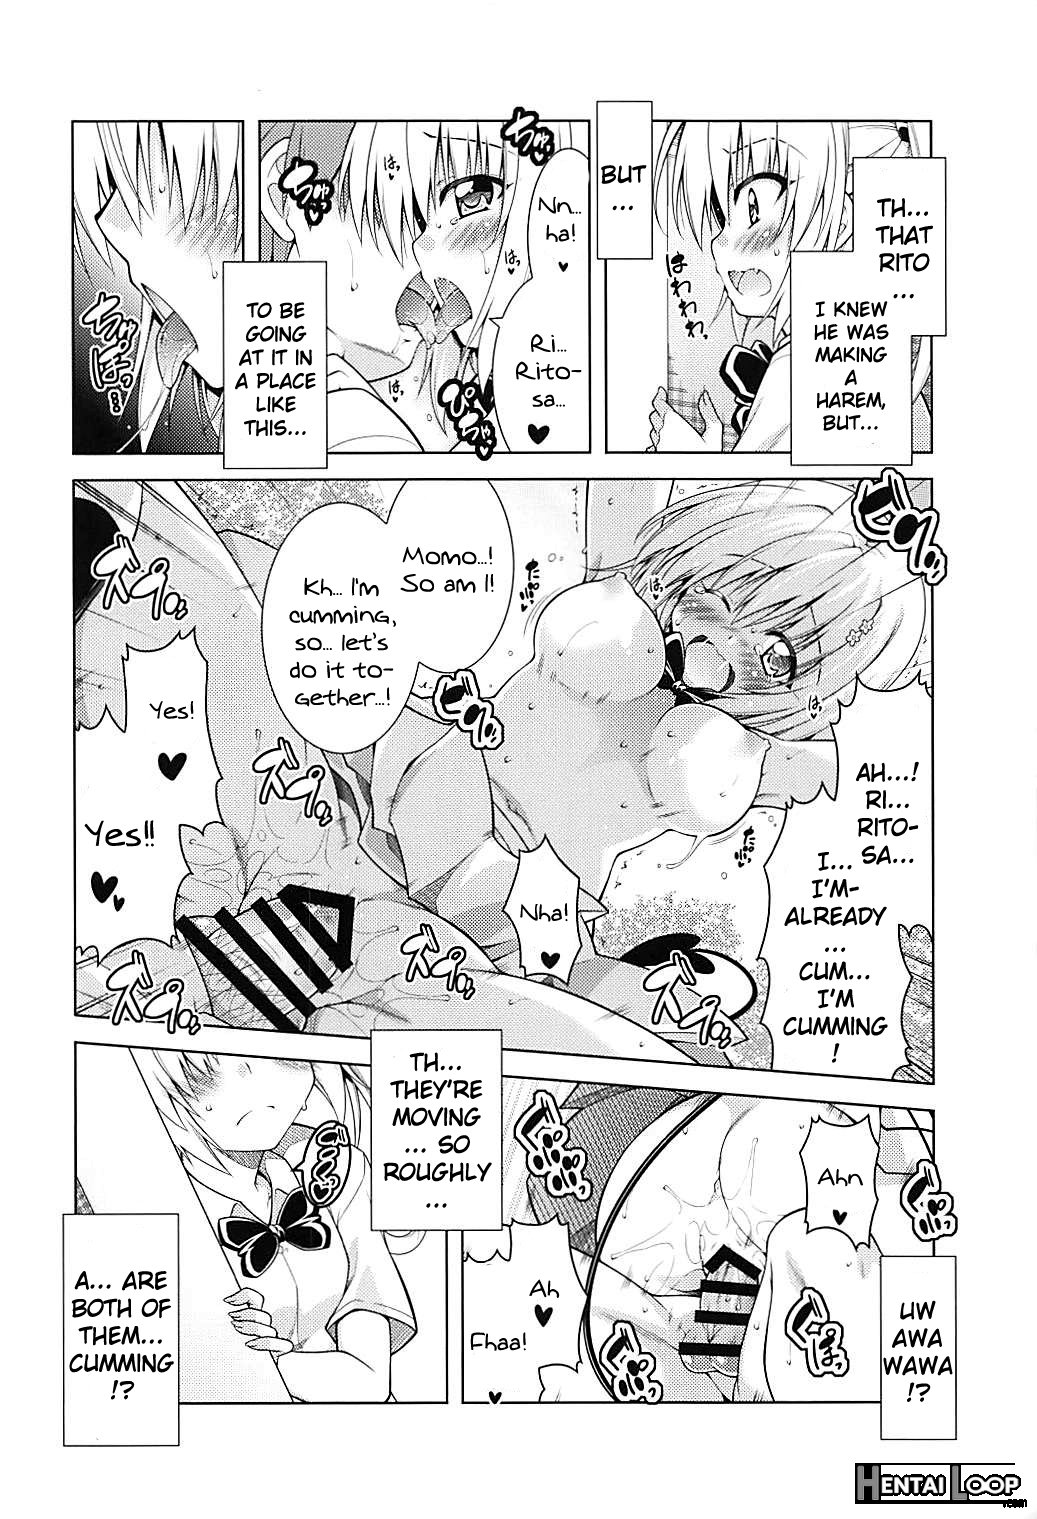 Rito-san No Harem Seikatsu 6 page 3